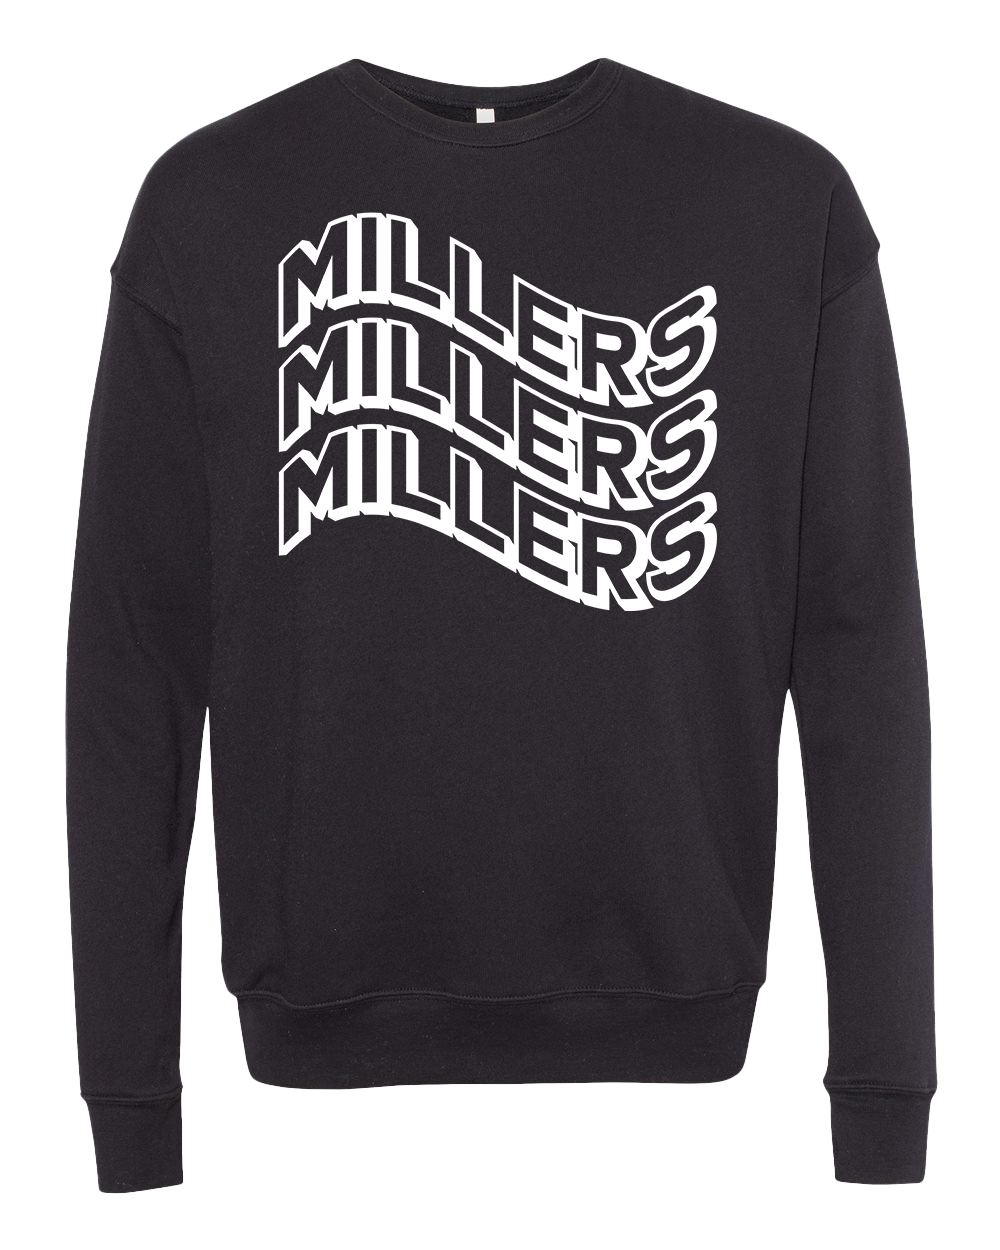 Noblesville Millers Wavy Font Crew Sweatshirt - Black